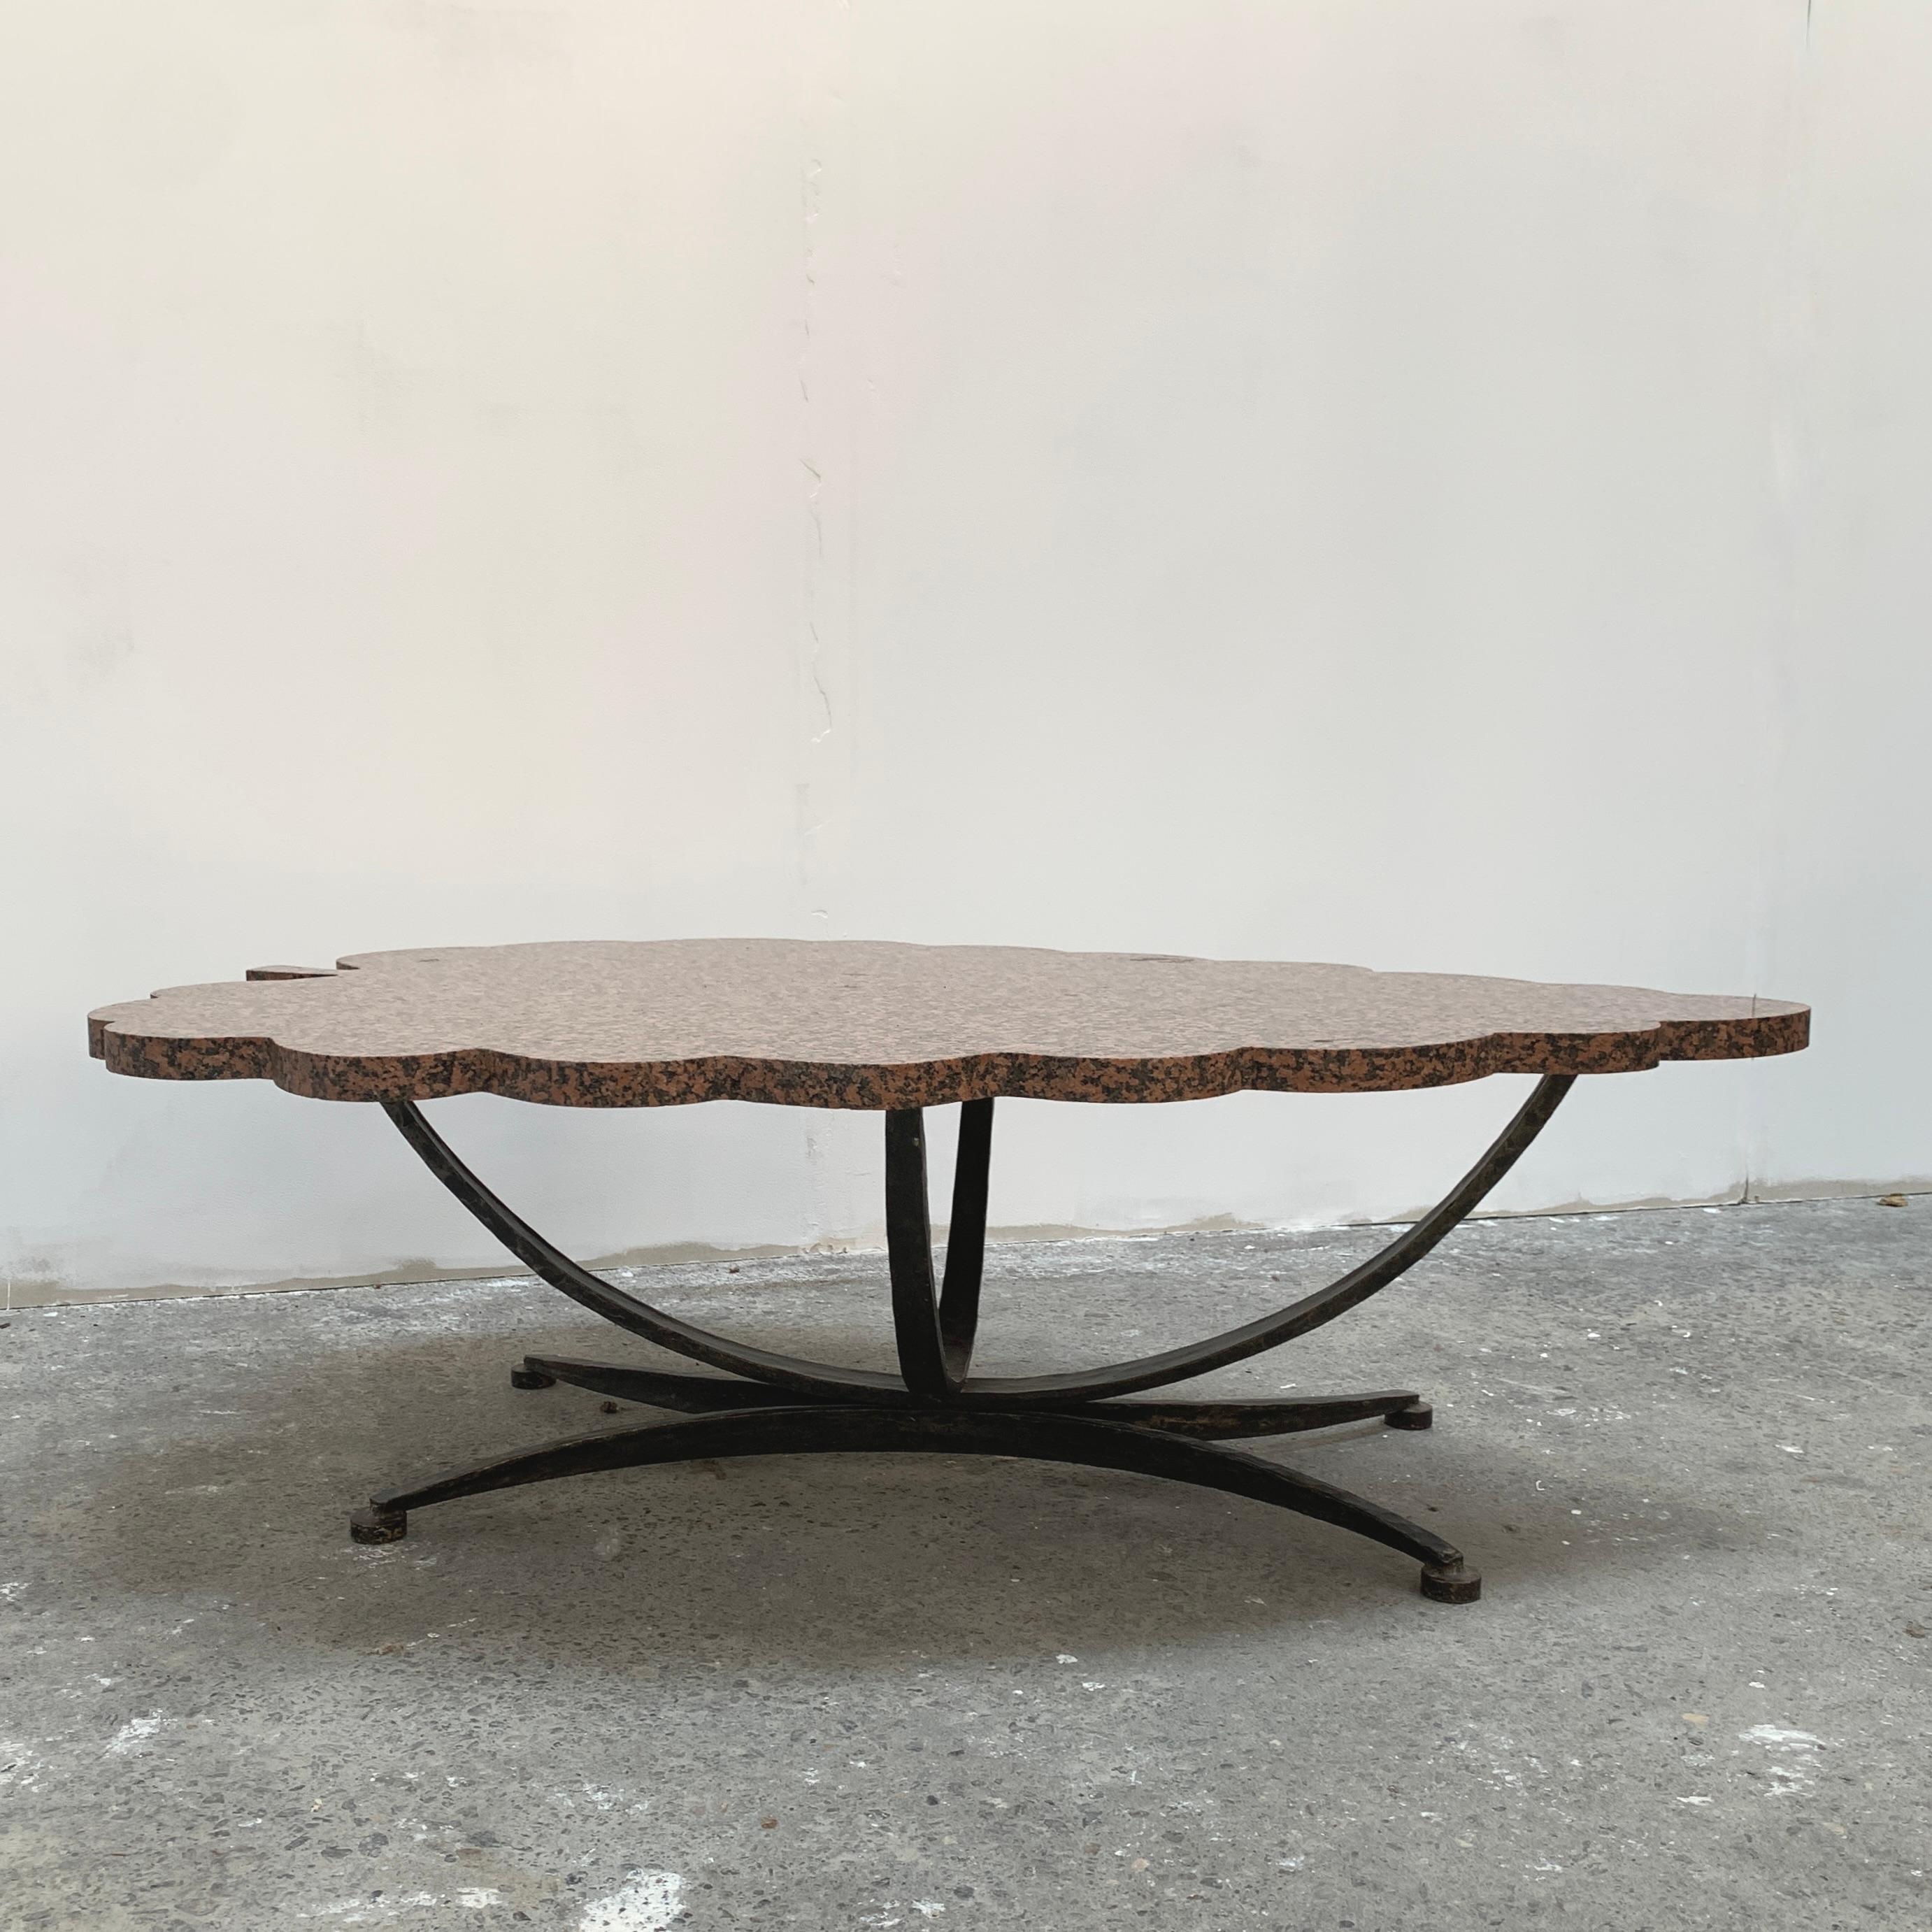 Belle table basse ancienne, avec plateau en granit en forme stylisée de grappe de raisin sur pietement en fer forgé martelé.  Dim Plateau : 82l x122L x 2,7 épaisseur cm  Dim piètement : 52l x 99L x 36H cm